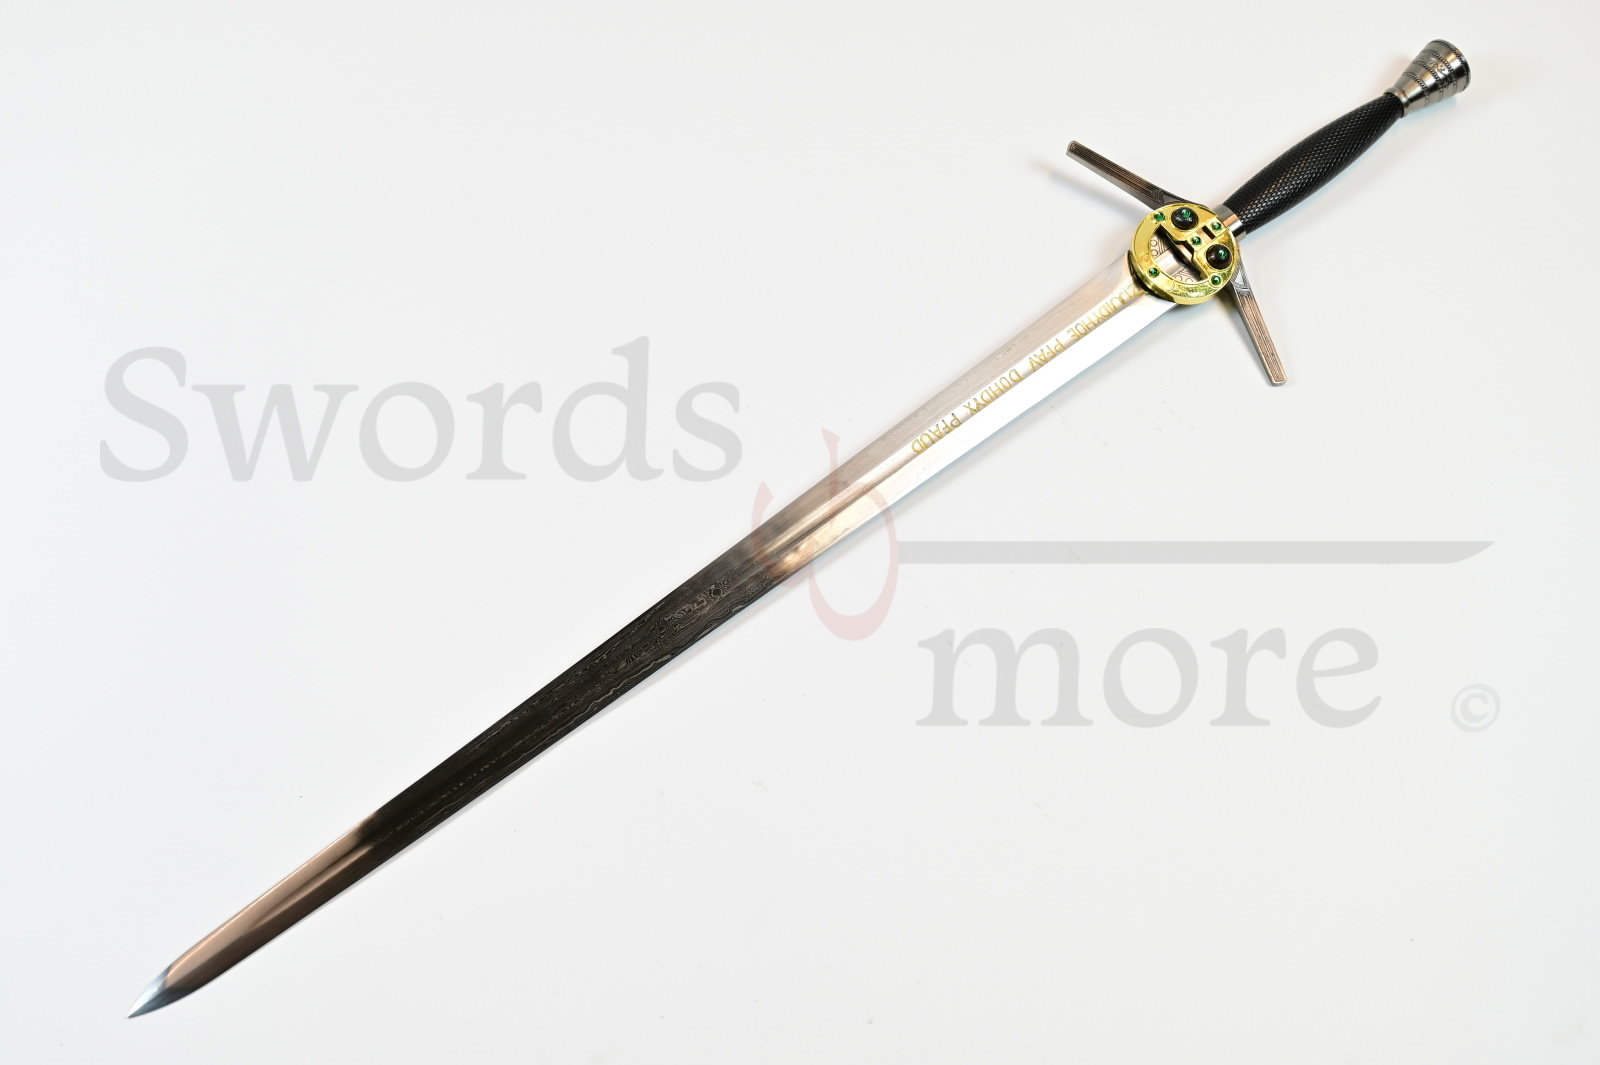 Witcher - Stahl Schwert mit Scheide - handgeschmiedet & gefaltet, Netflix Version